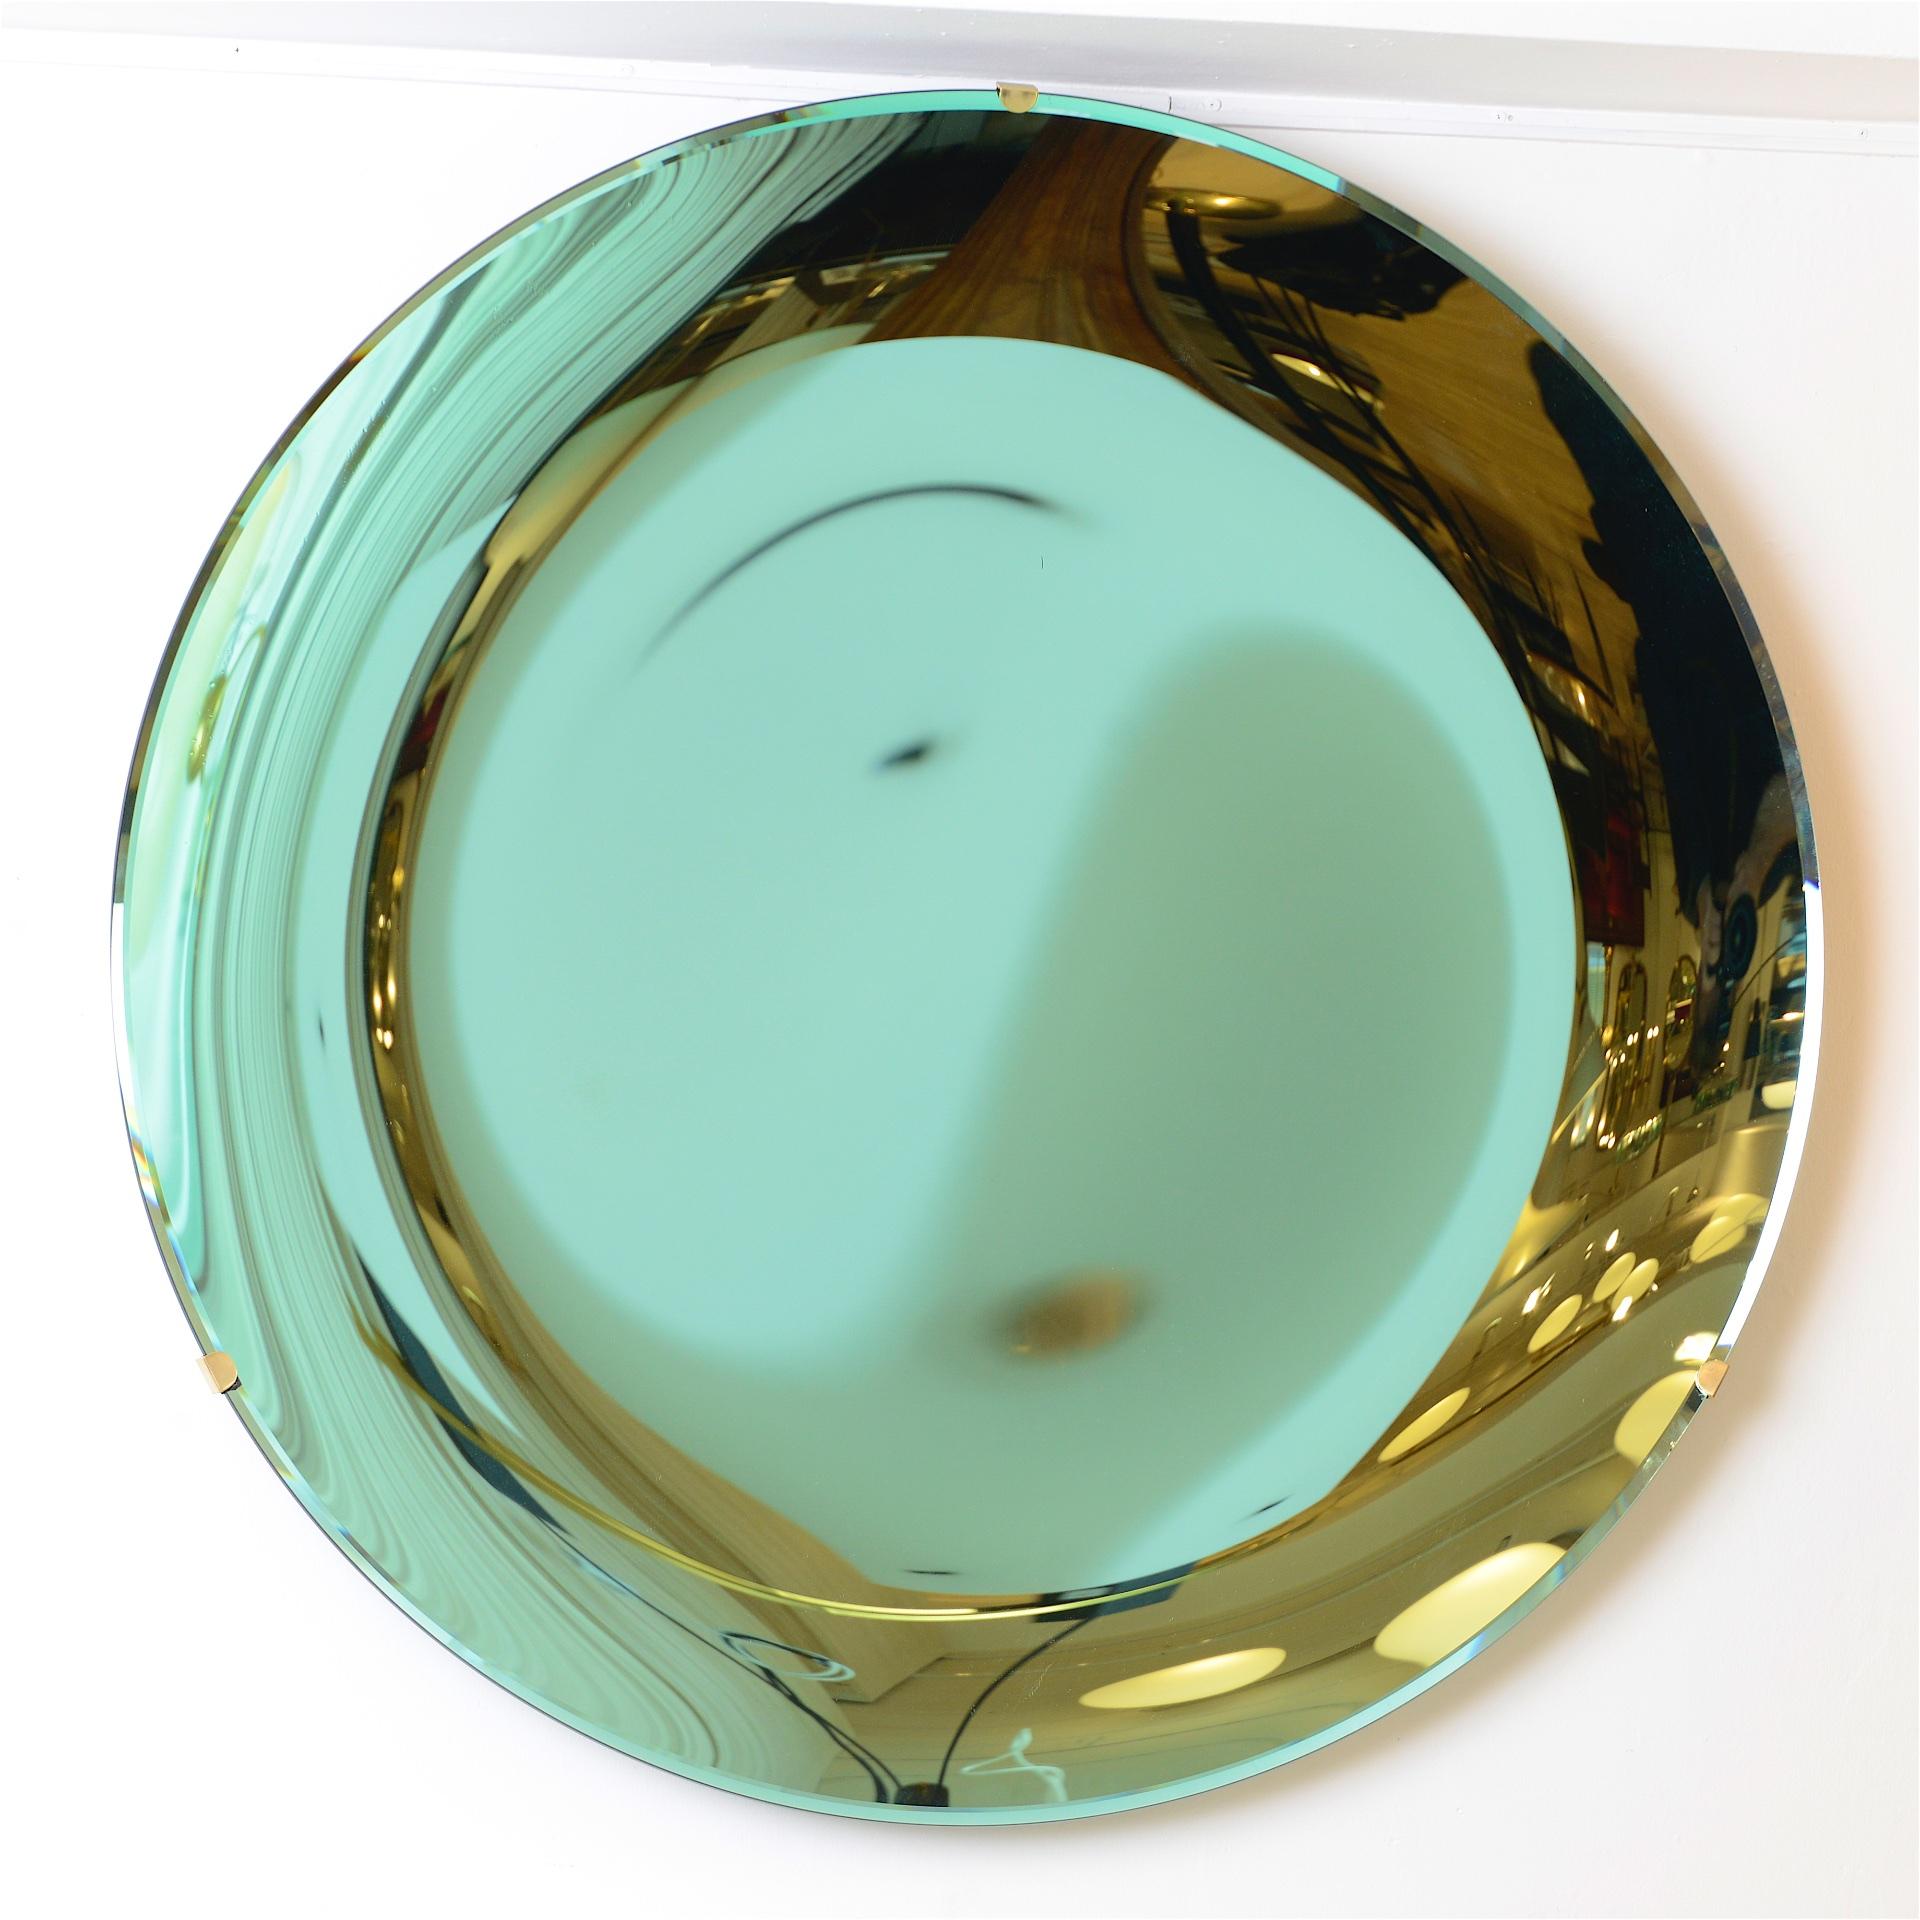 Miroir concave de style Anish Kapoor. 

Miroir sculptural en verre vert, avec fixation murale en laiton.

Miroir d'excellente qualité avec des reflets étonnants. 

Disponible en or rose, cuivre et bleu. Egalement en verre antique.

Veuillez nous